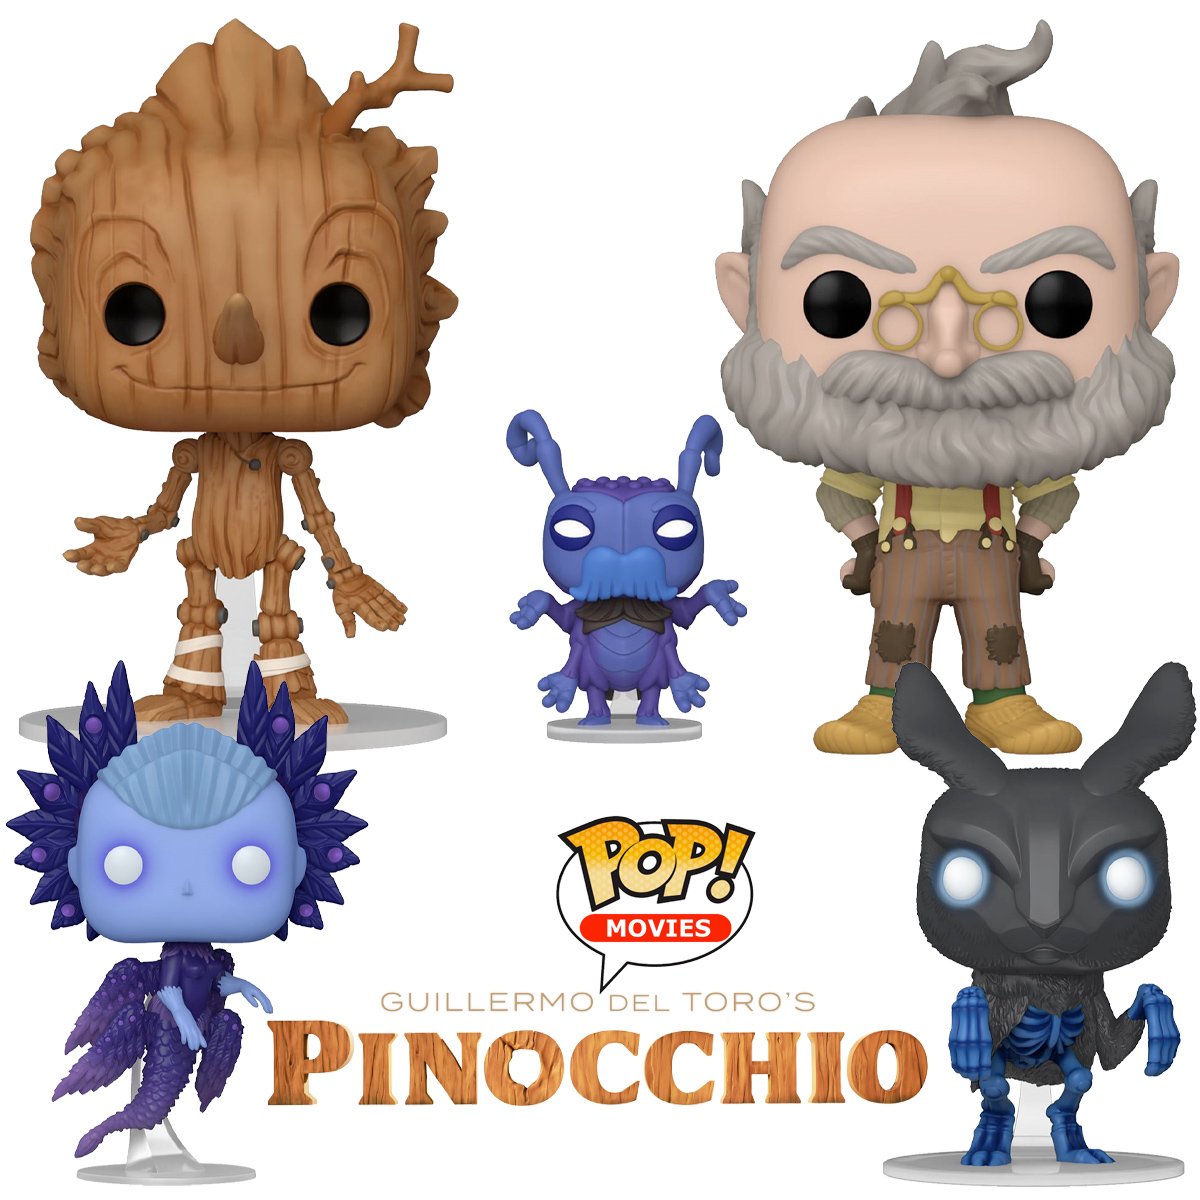 Bonecos Pop! Pinocchio de Guillermo del Toro (Netflix)